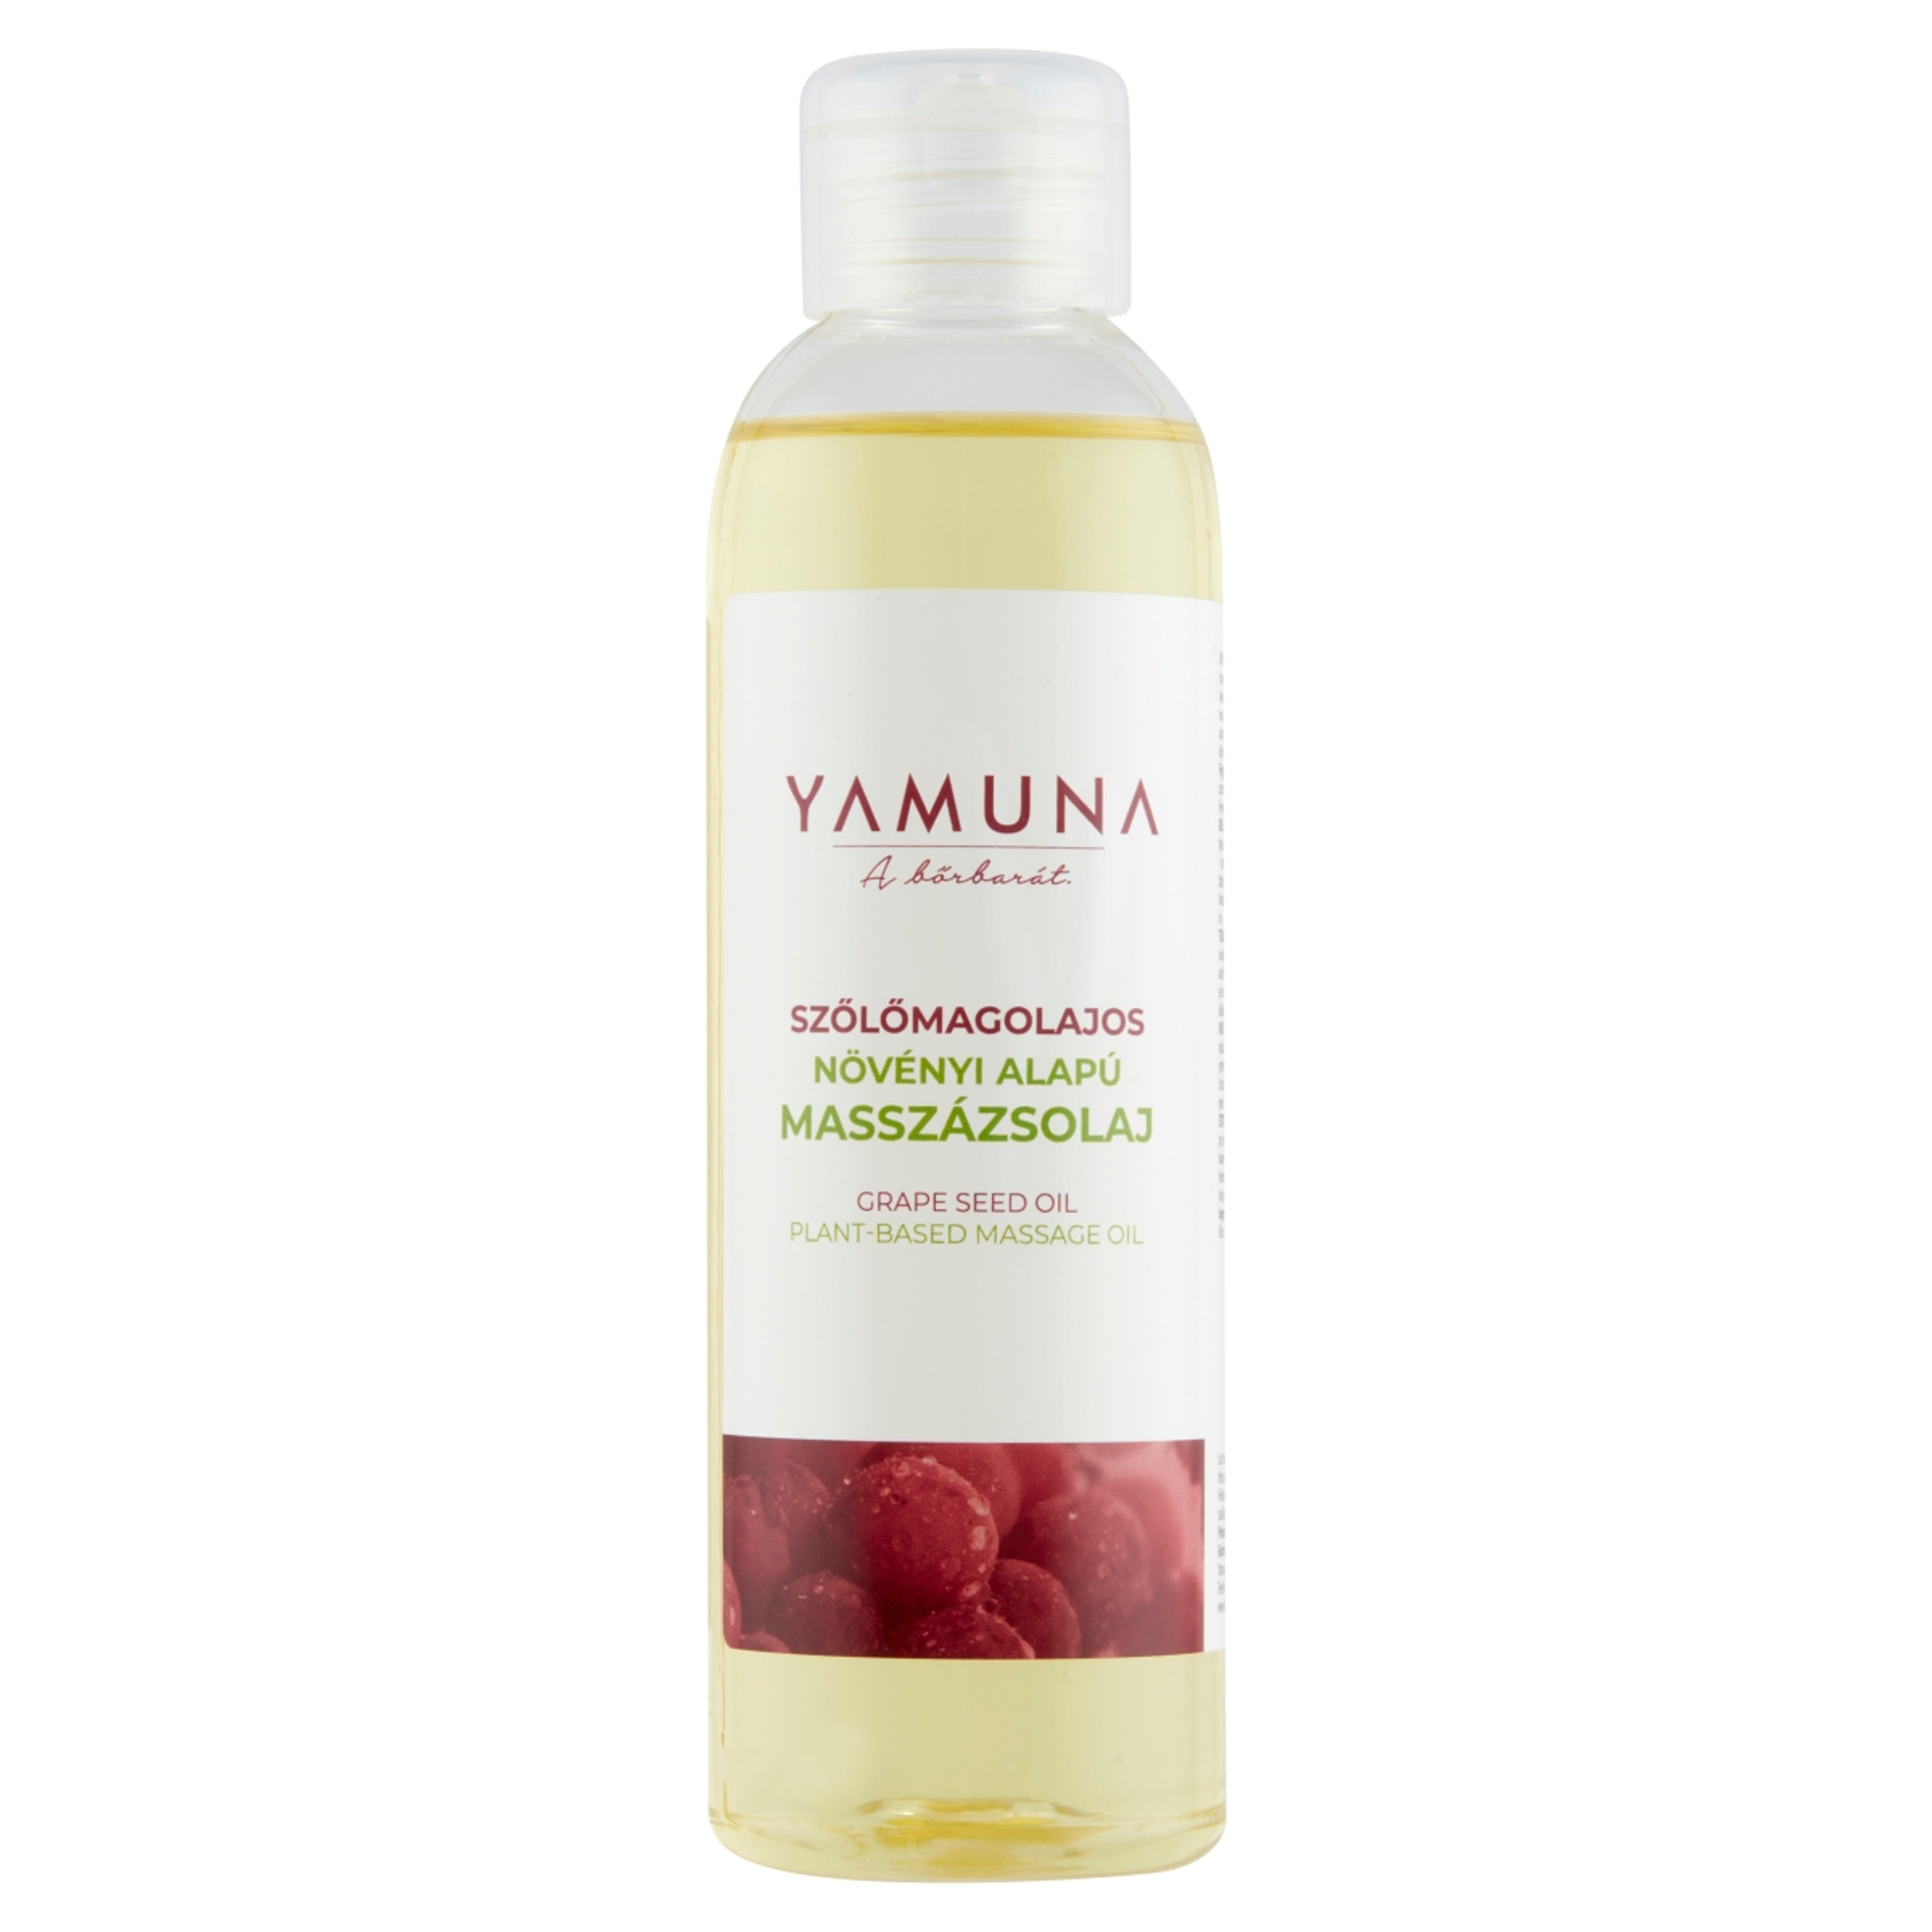 Yamuna szőlőmagos masszázsolaj - 250 ml